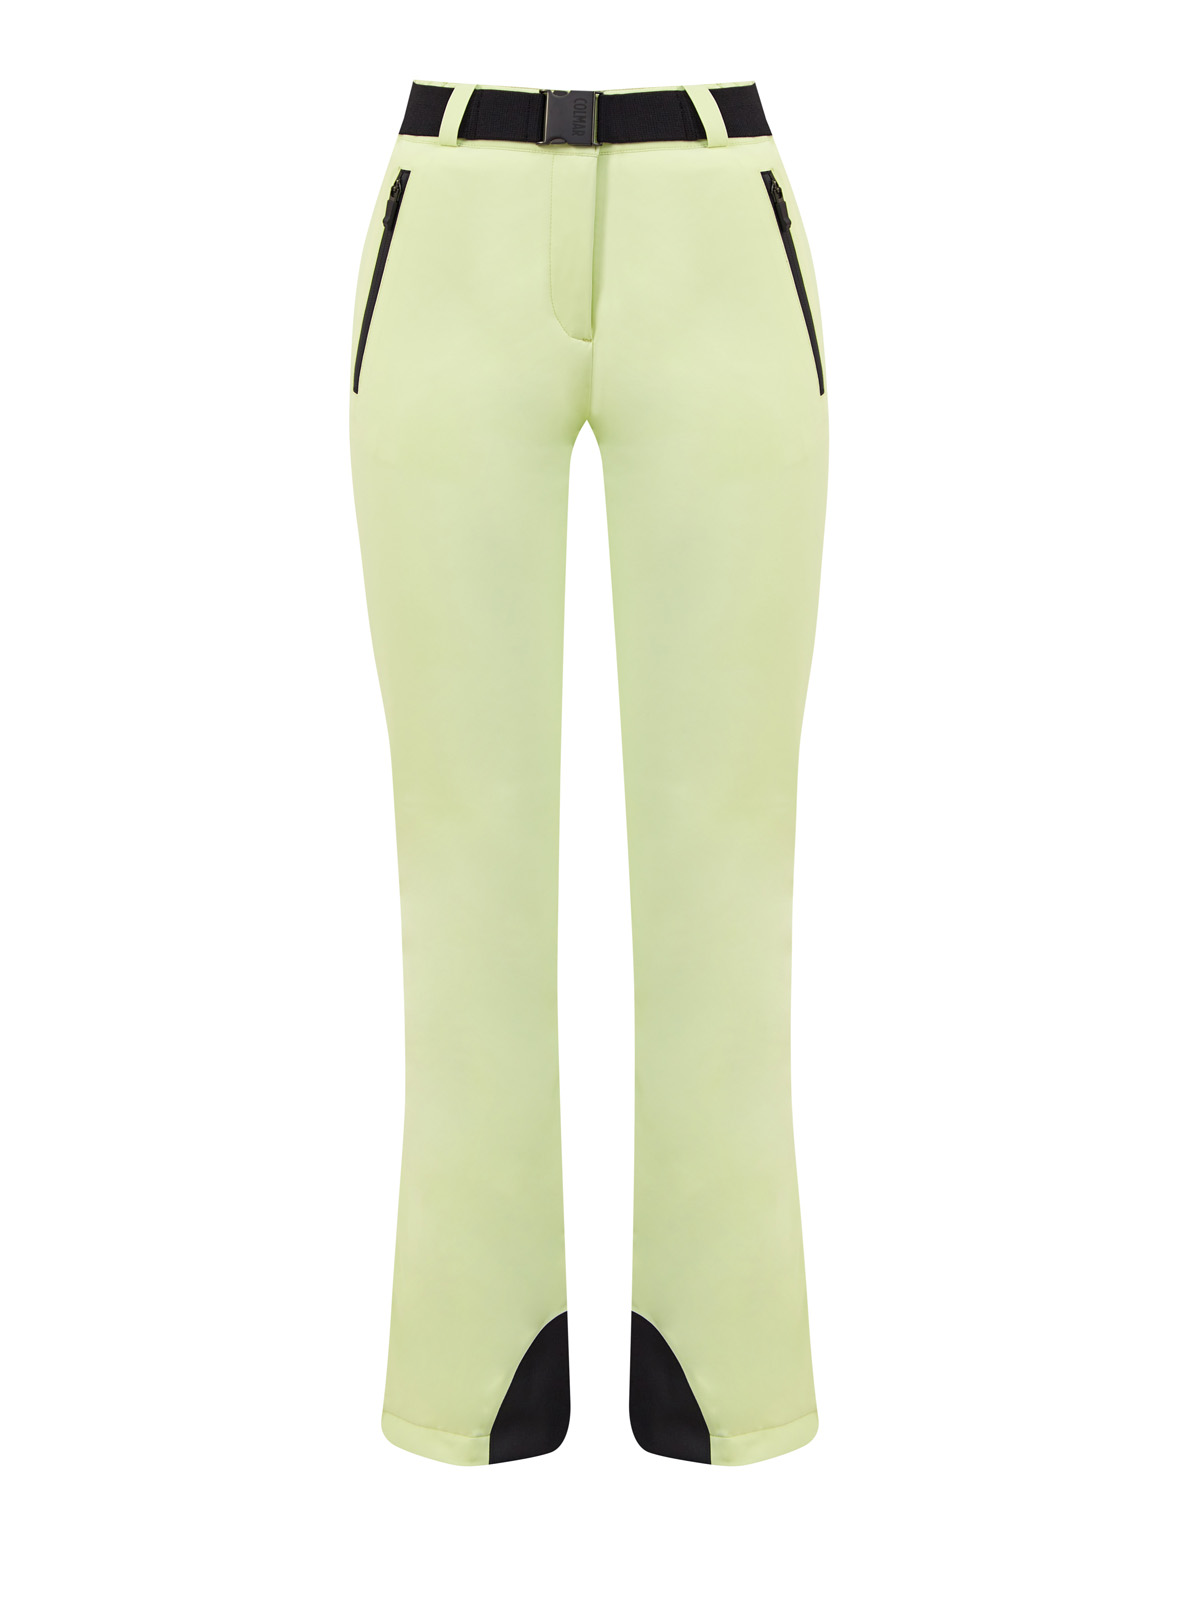 Горнолыжные брюки с утеплителем Clomax® Flex4way и поясом COLMAR, цвет зеленый, размер S;M;L;XL